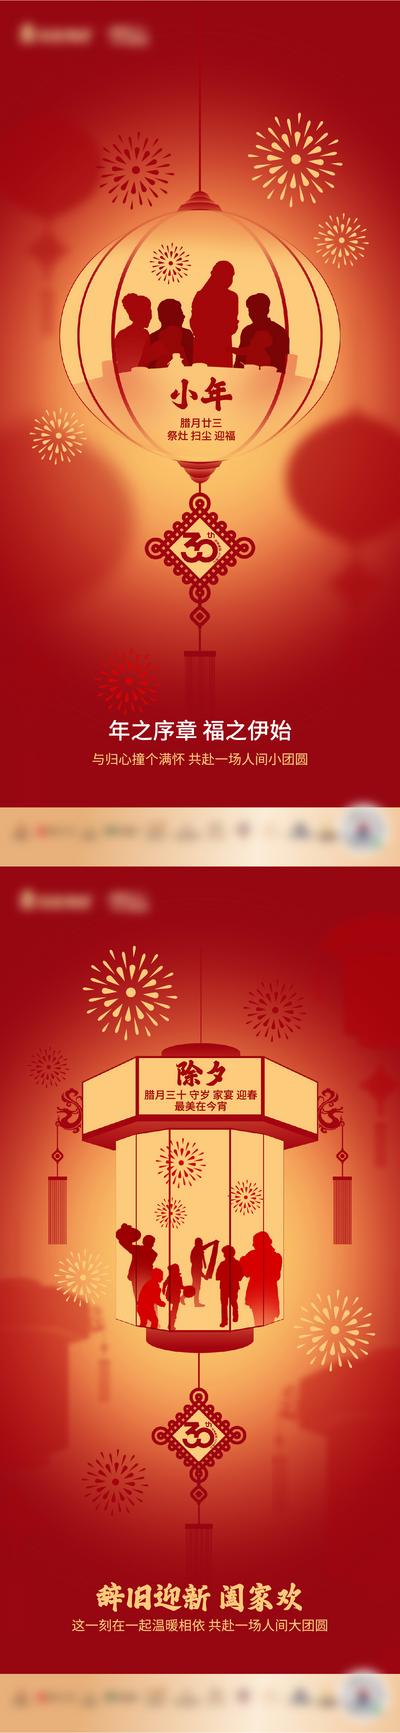 南门网 海报 房地产 中国传统节日 除夕 小年 年俗  灯笼 剪影 红色 